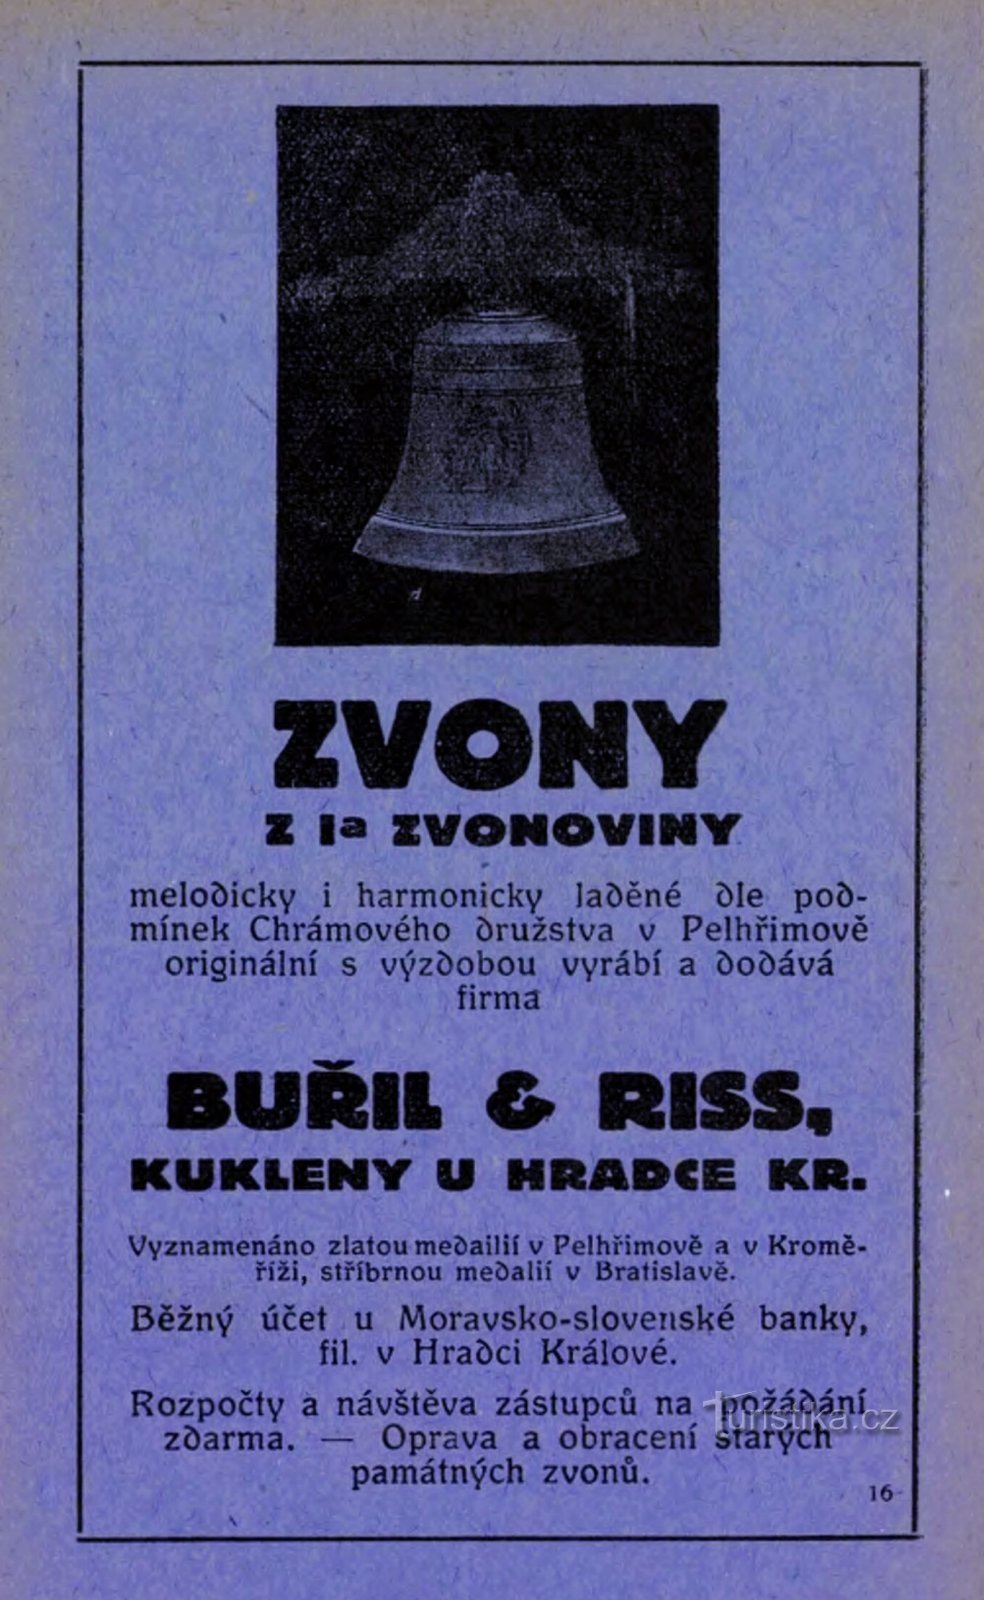 Zeitgemäße Anzeige der Glockenmacherei Buřil und Riss in Kuken aus dem Jahr 1928